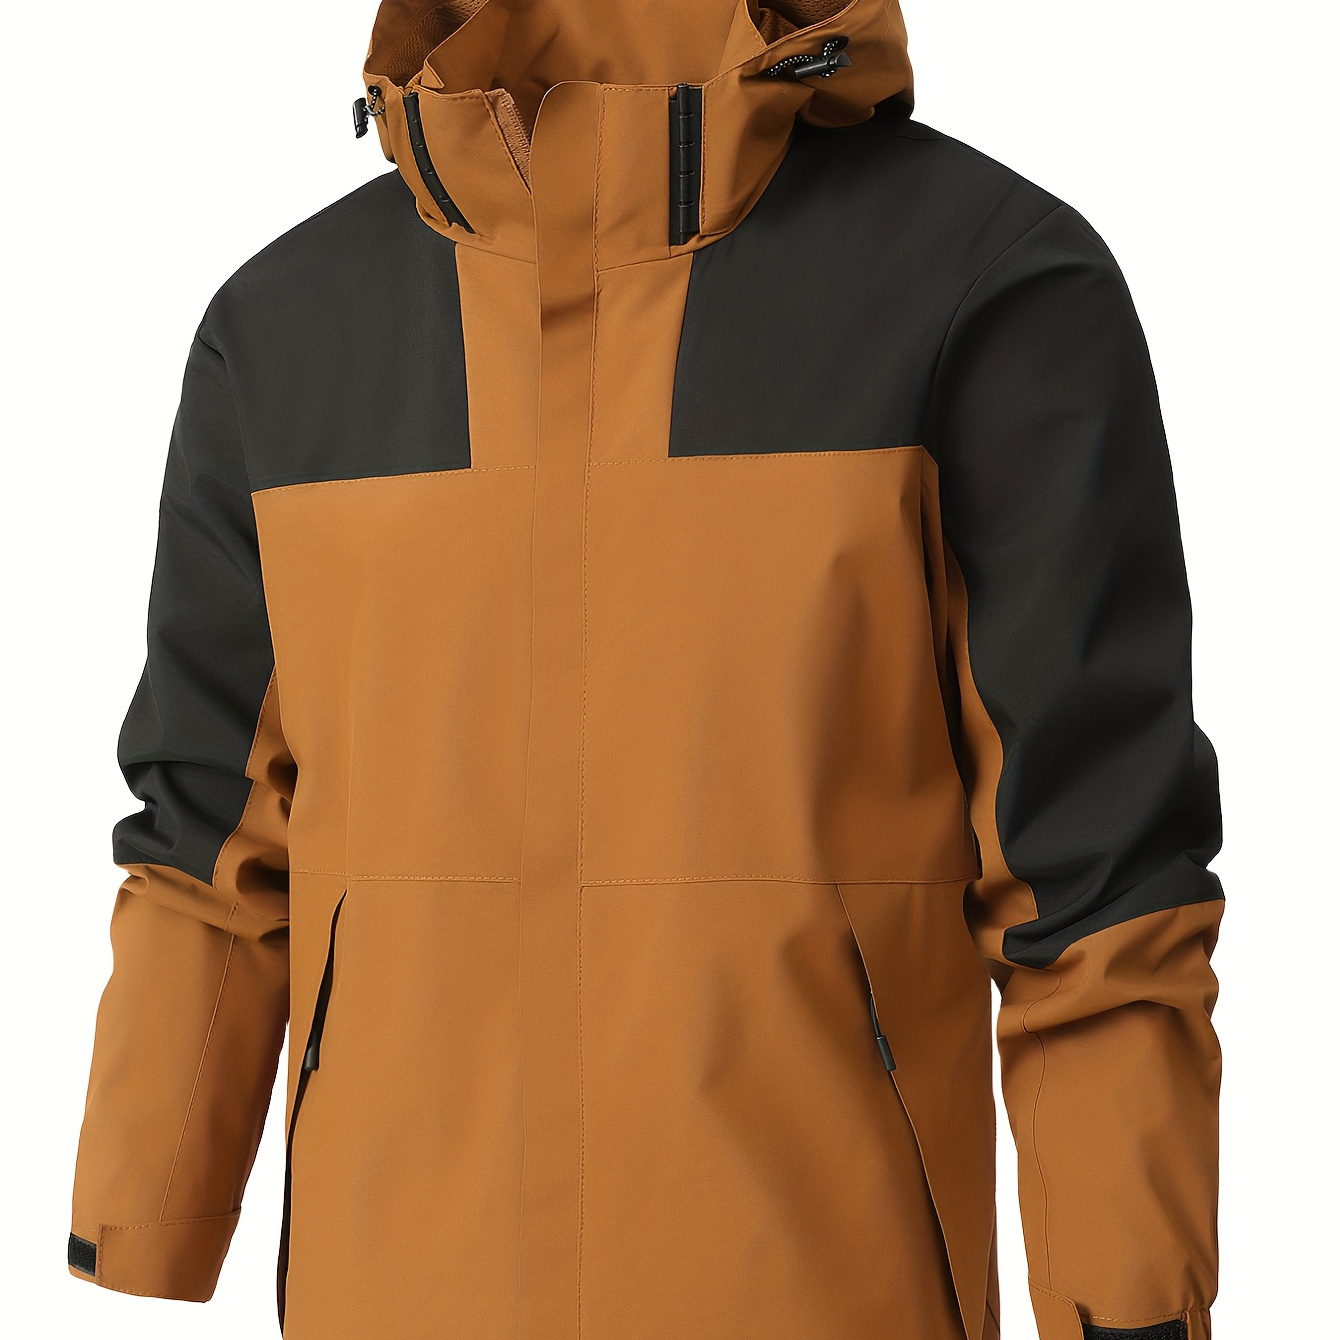 

Men's Lightweight Waterproof Windbreaker Jacket, Casual Mesh Lining Jacket For Outdoor Activities